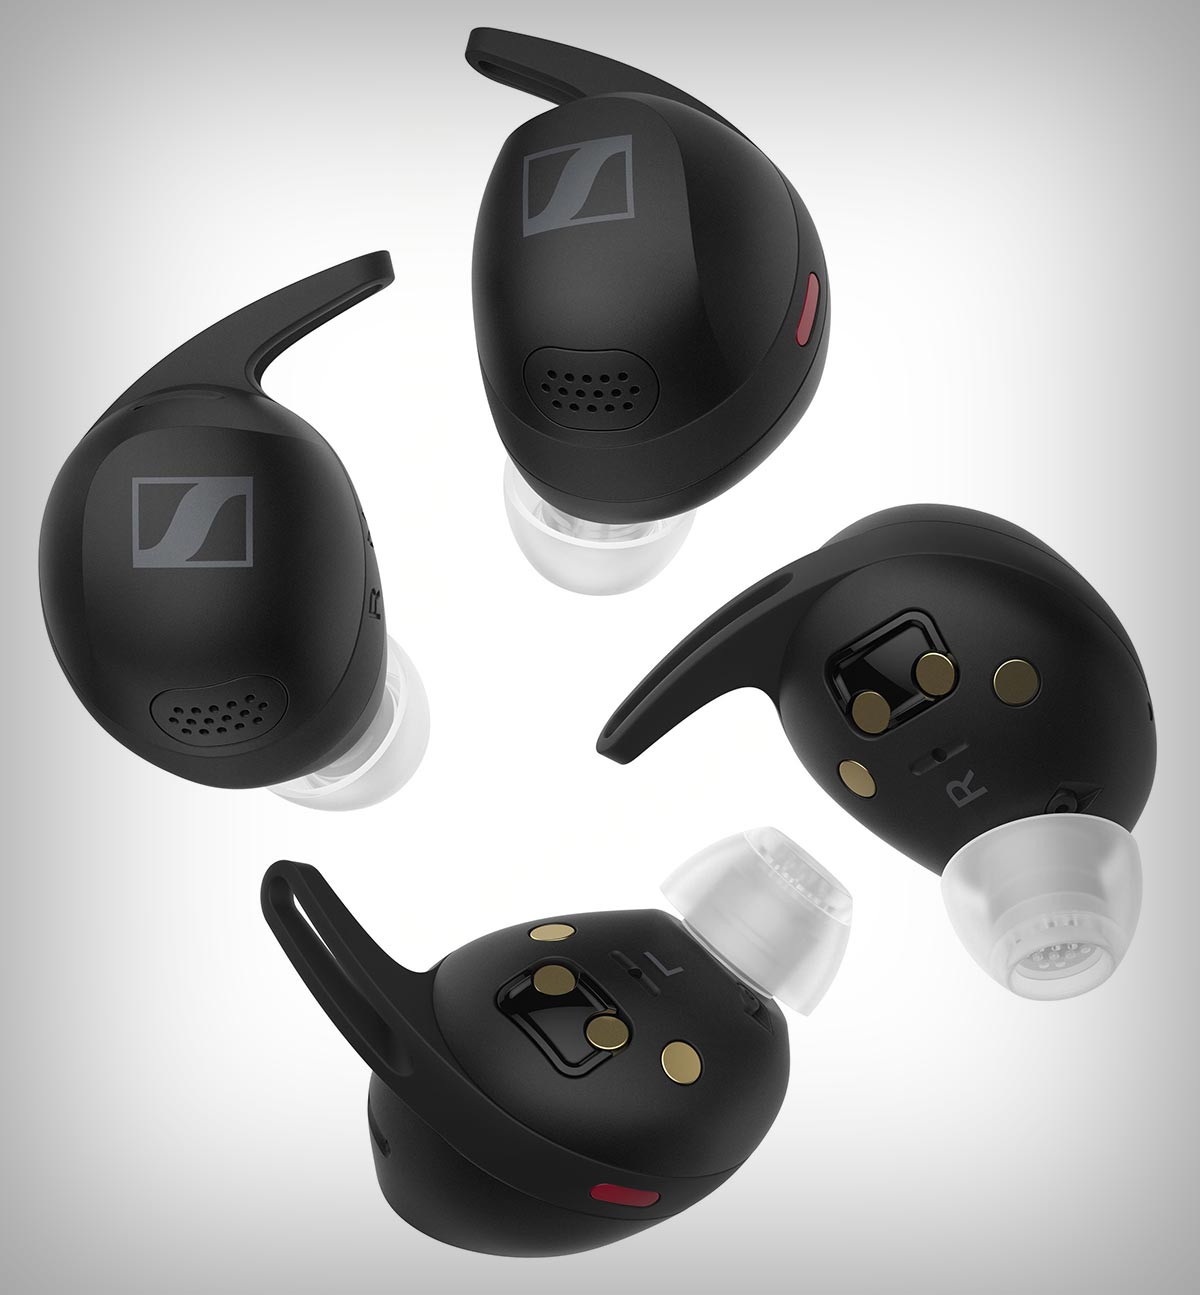 Sennheiser Momentum Sport, los primeros auriculares inalámbricos con sensor de ritmo cardíaco y temperatura llegan al mercado